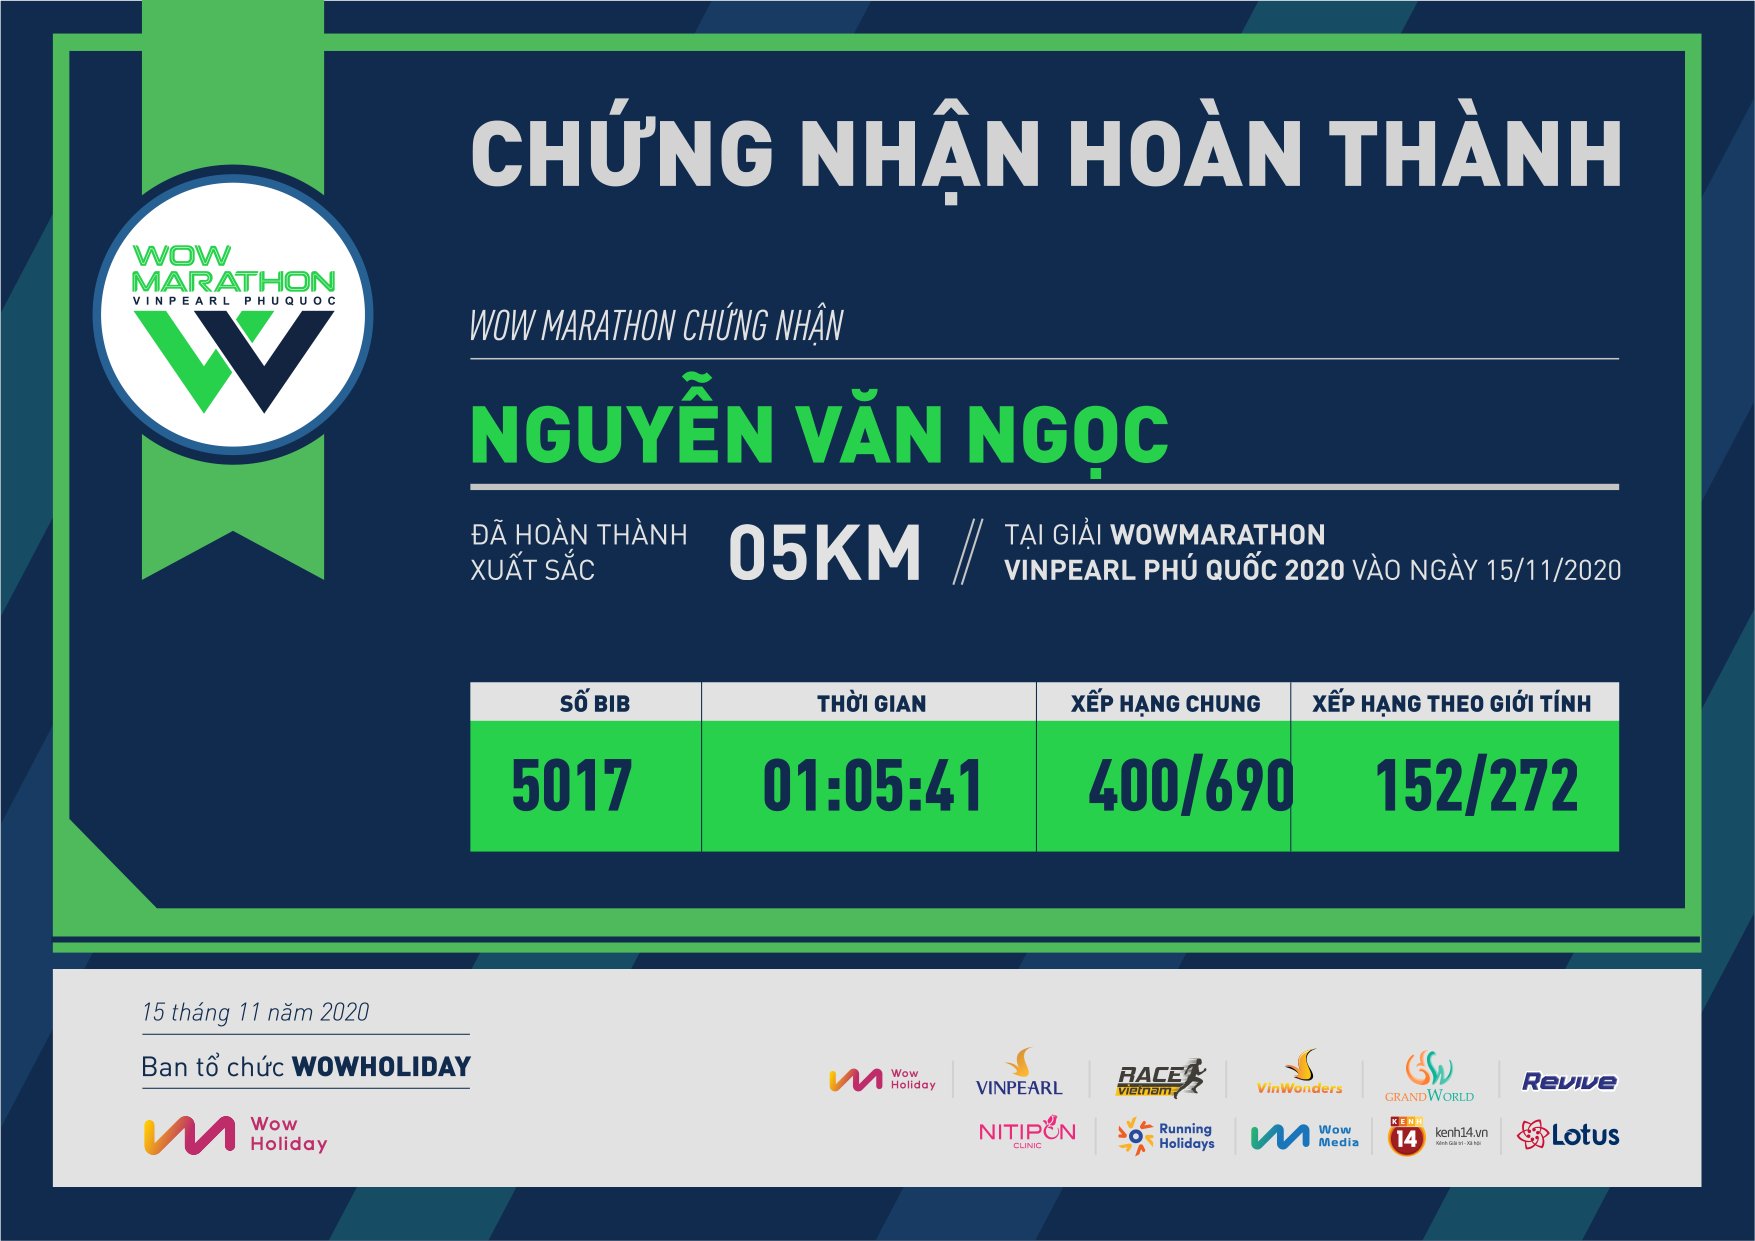 5017 - Nguyễn Văn Ngọc